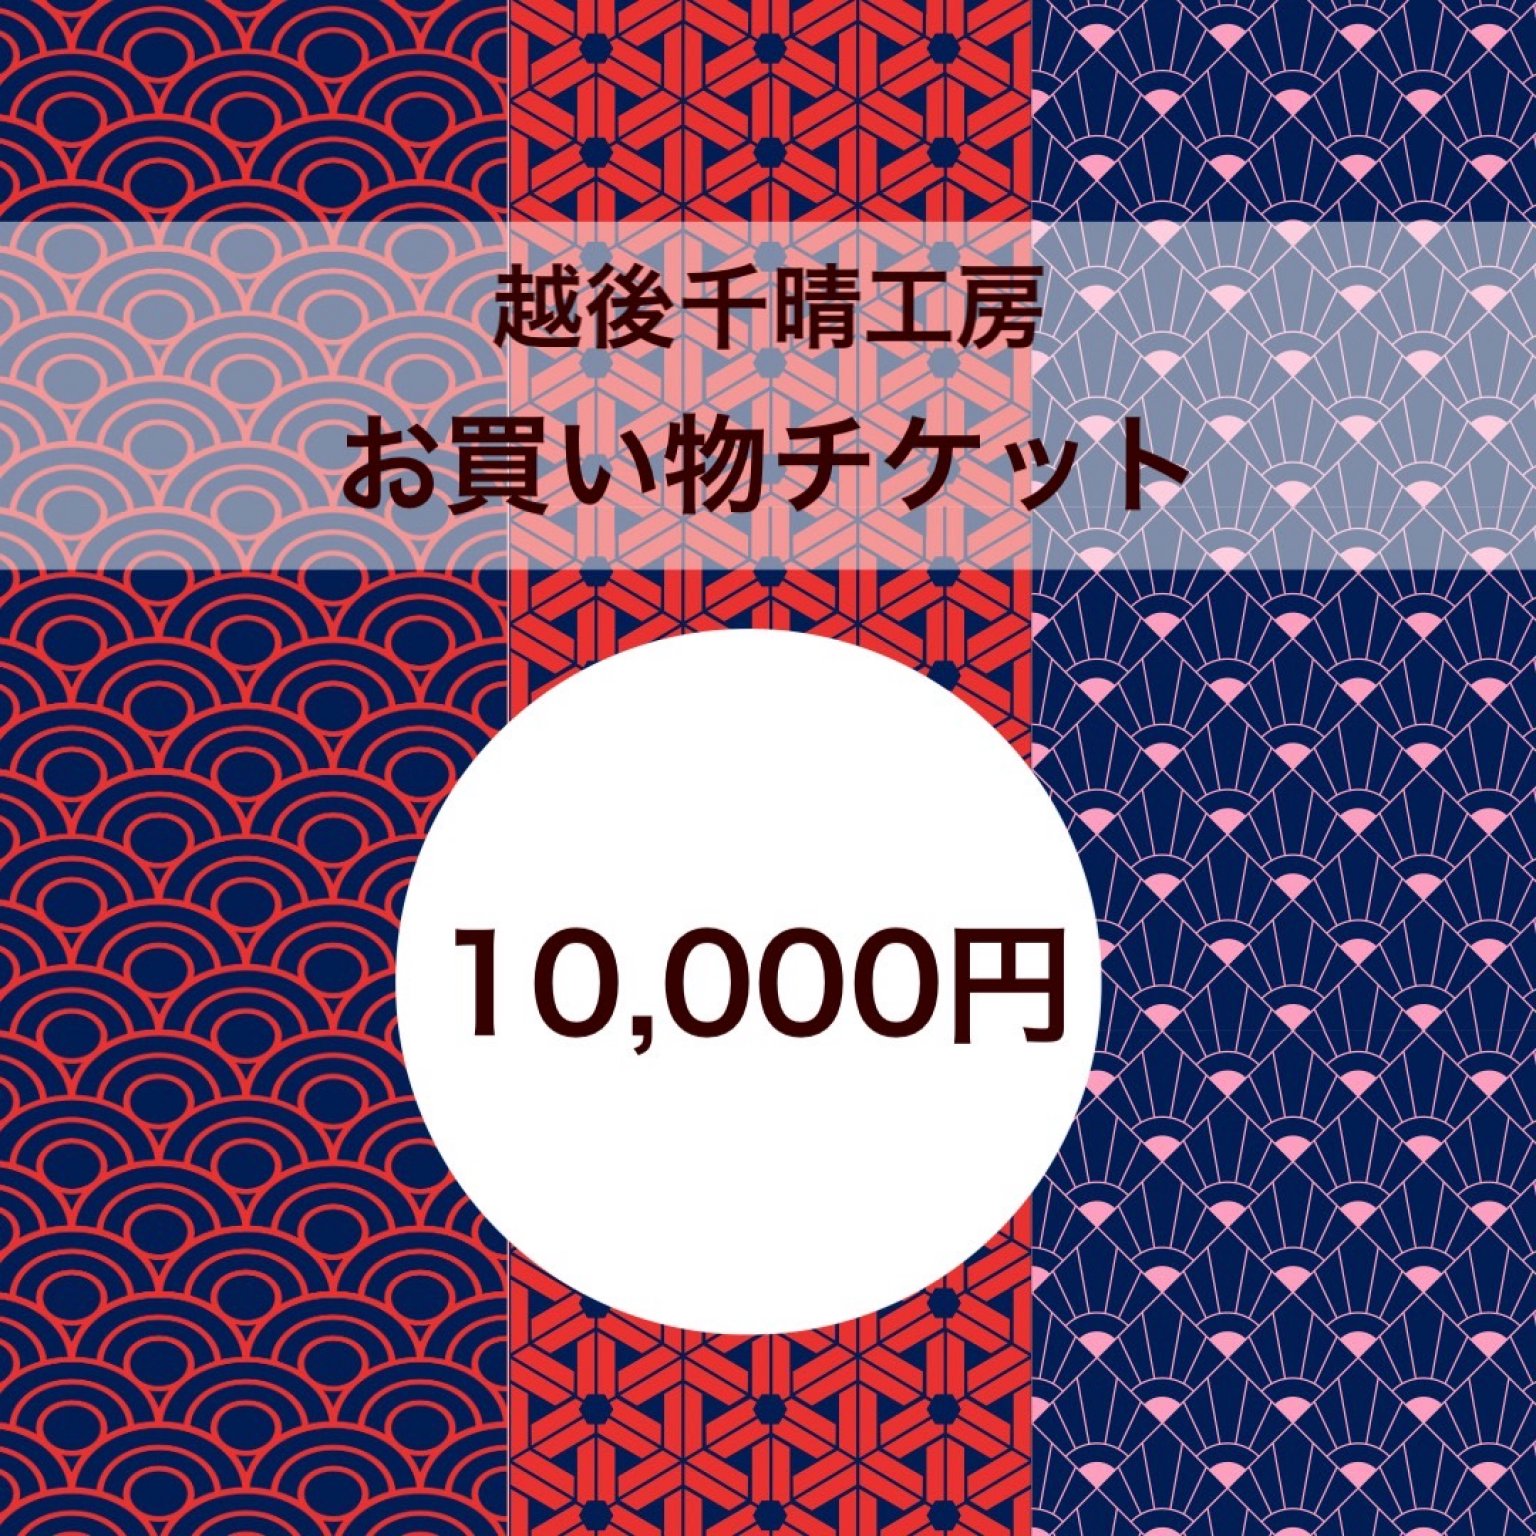 【10000円】お買い物チケット